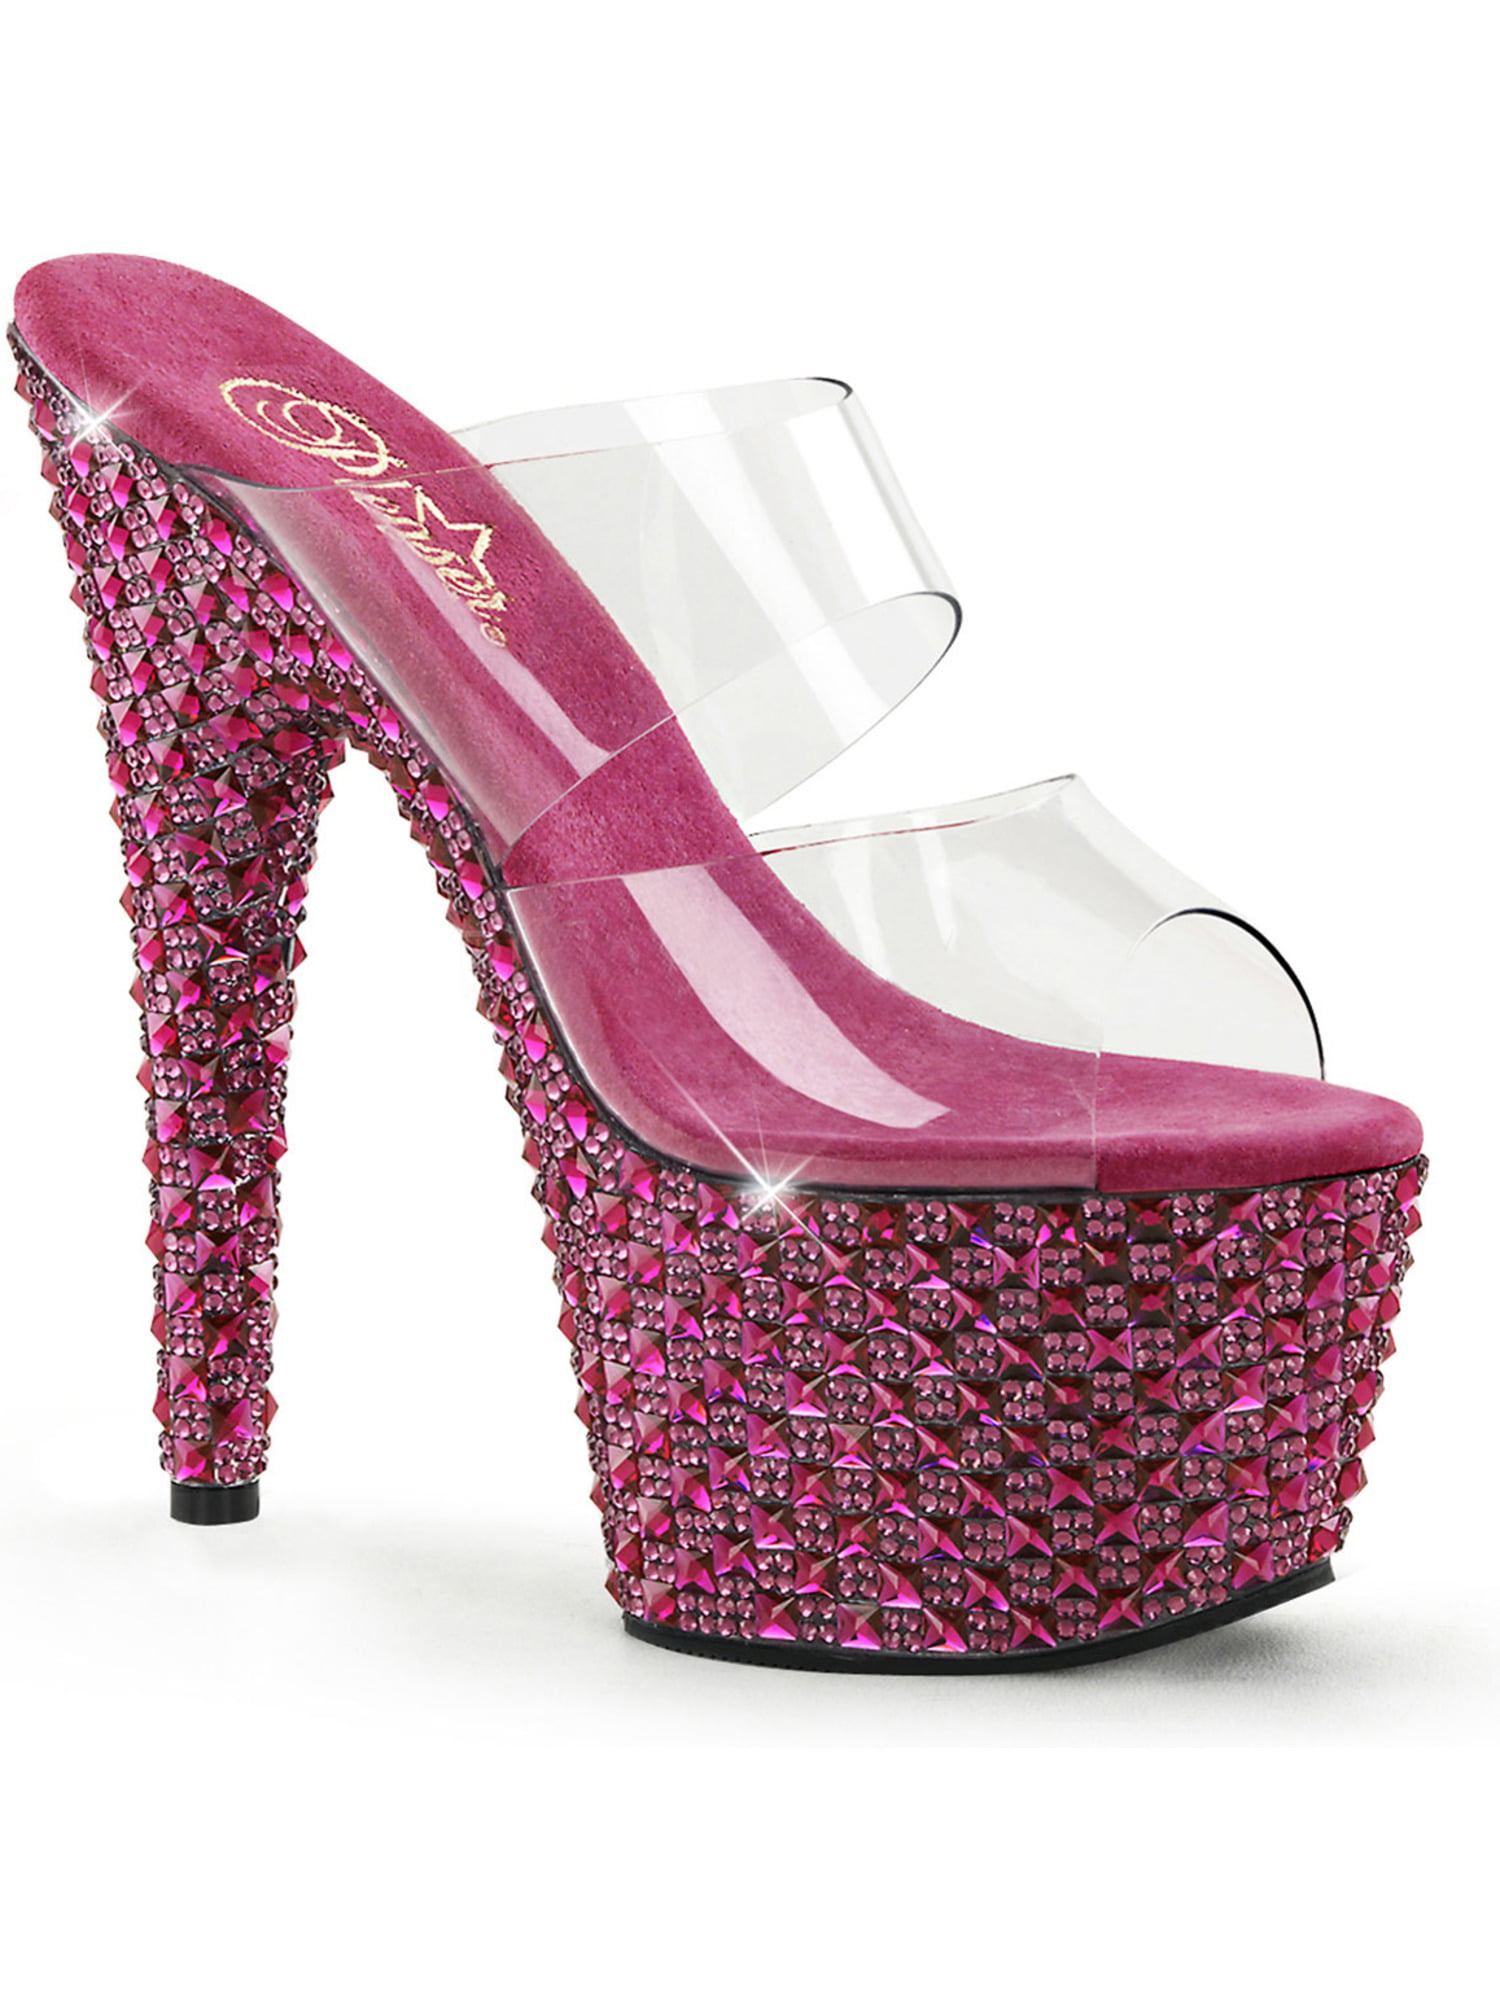 embellished pink heels